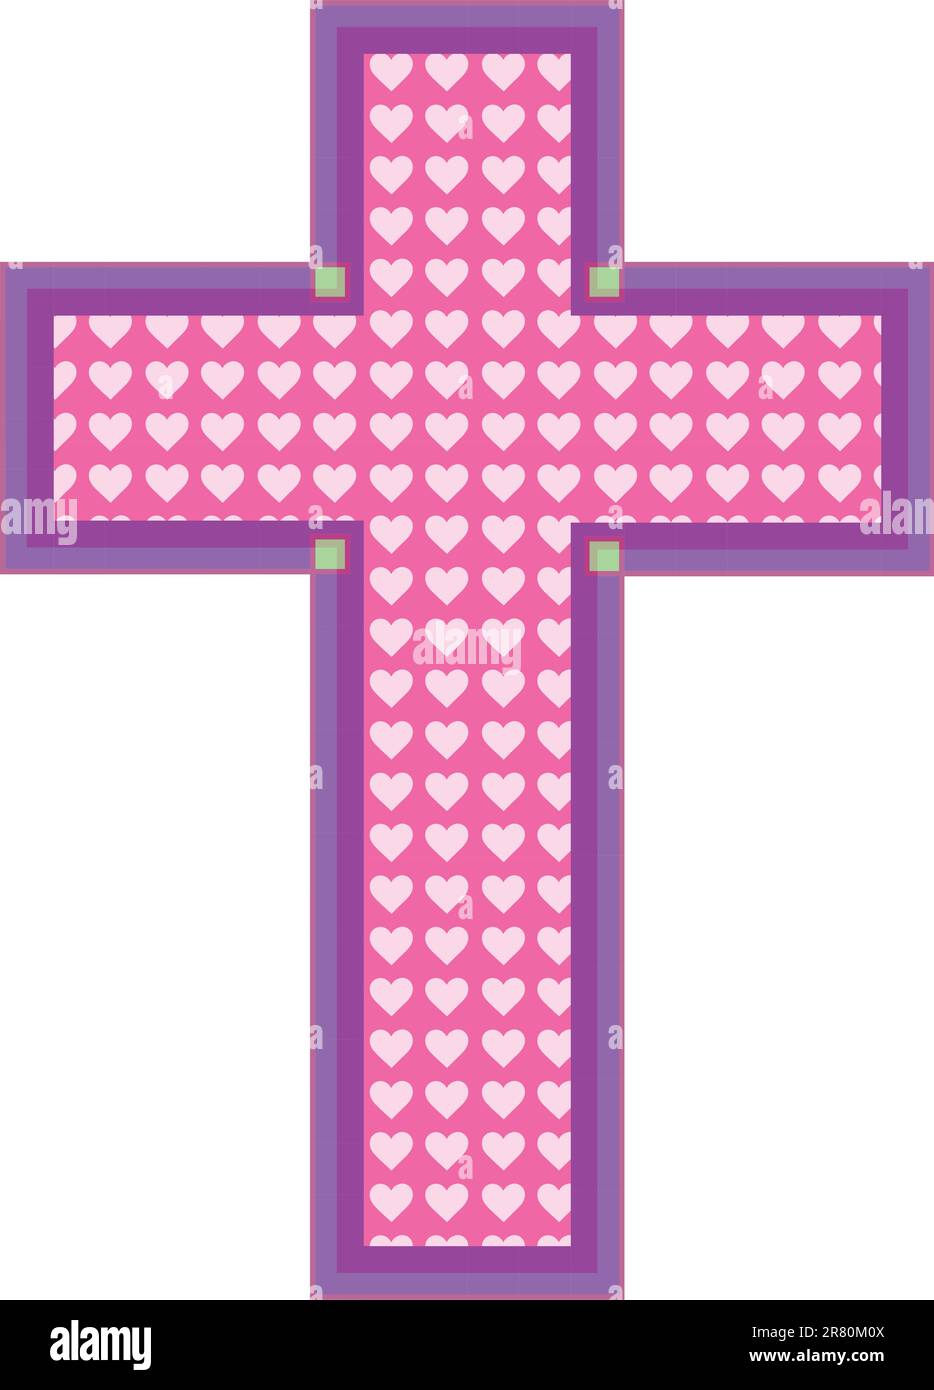 Ein rosafarbenes Kreuz hat Herzausschnitte in einem blasseren Pink-Farbton mit einem lilafarbenen und lilafarbenen Rand. Stock Vektor